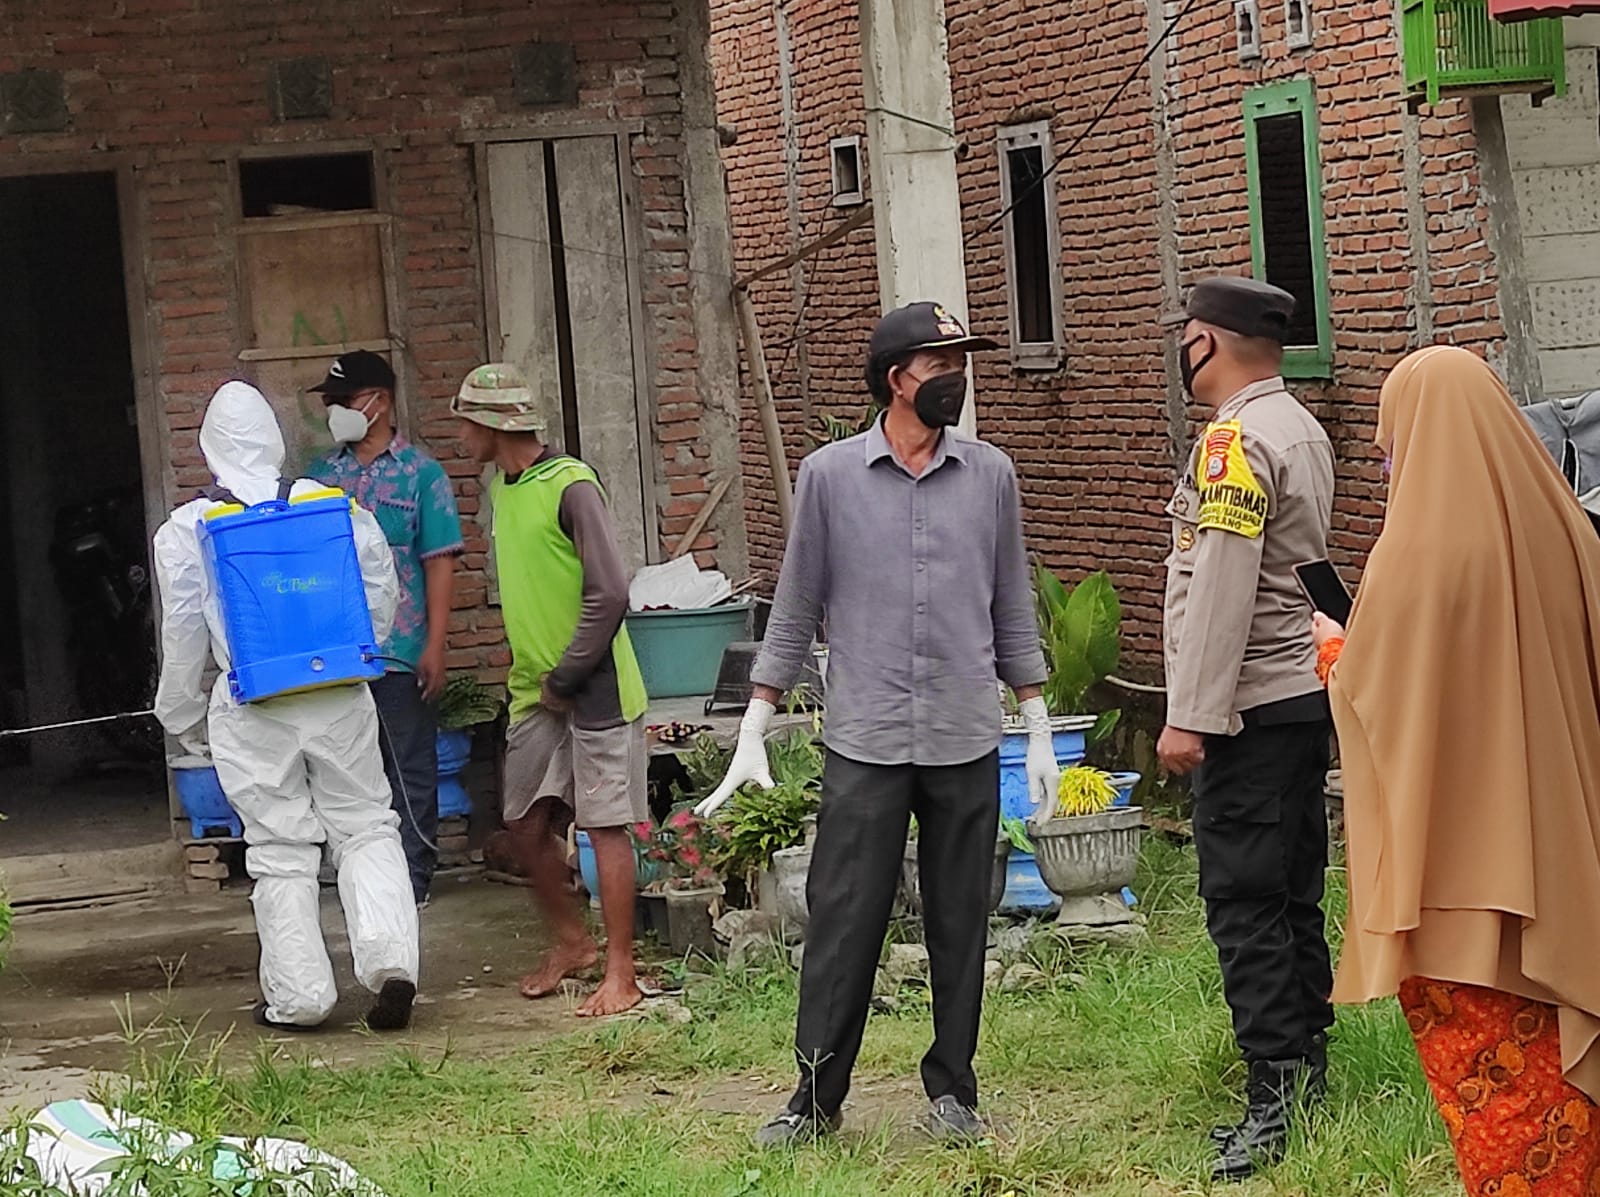 Bhabinkamtibmas Aipda Sudirman Polsek Mattiro Sompe, Monitoring Penyemprotan Disinfektan Di Rumah Warga Binaanya Yang Terpapar Covid-19